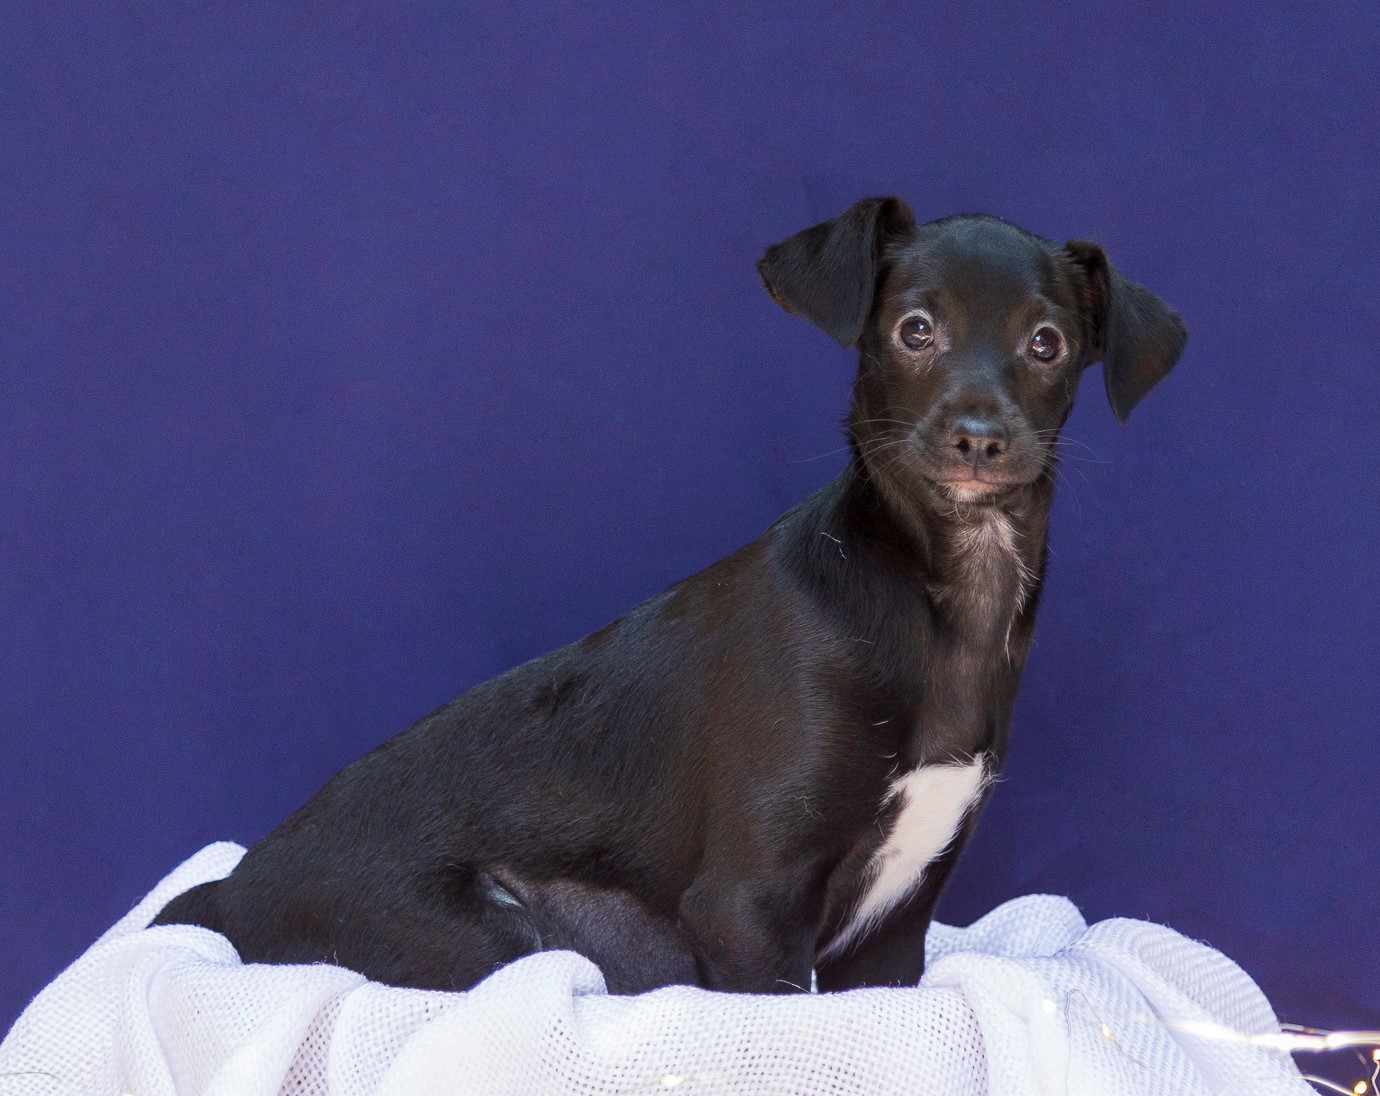 Munique é uma cachorrinha de pelo preto. Na região do pescoço e peitoral o pelo dela é branco. Ela está sentada em um pano branco e ao fundo há uma parede azul escuro.